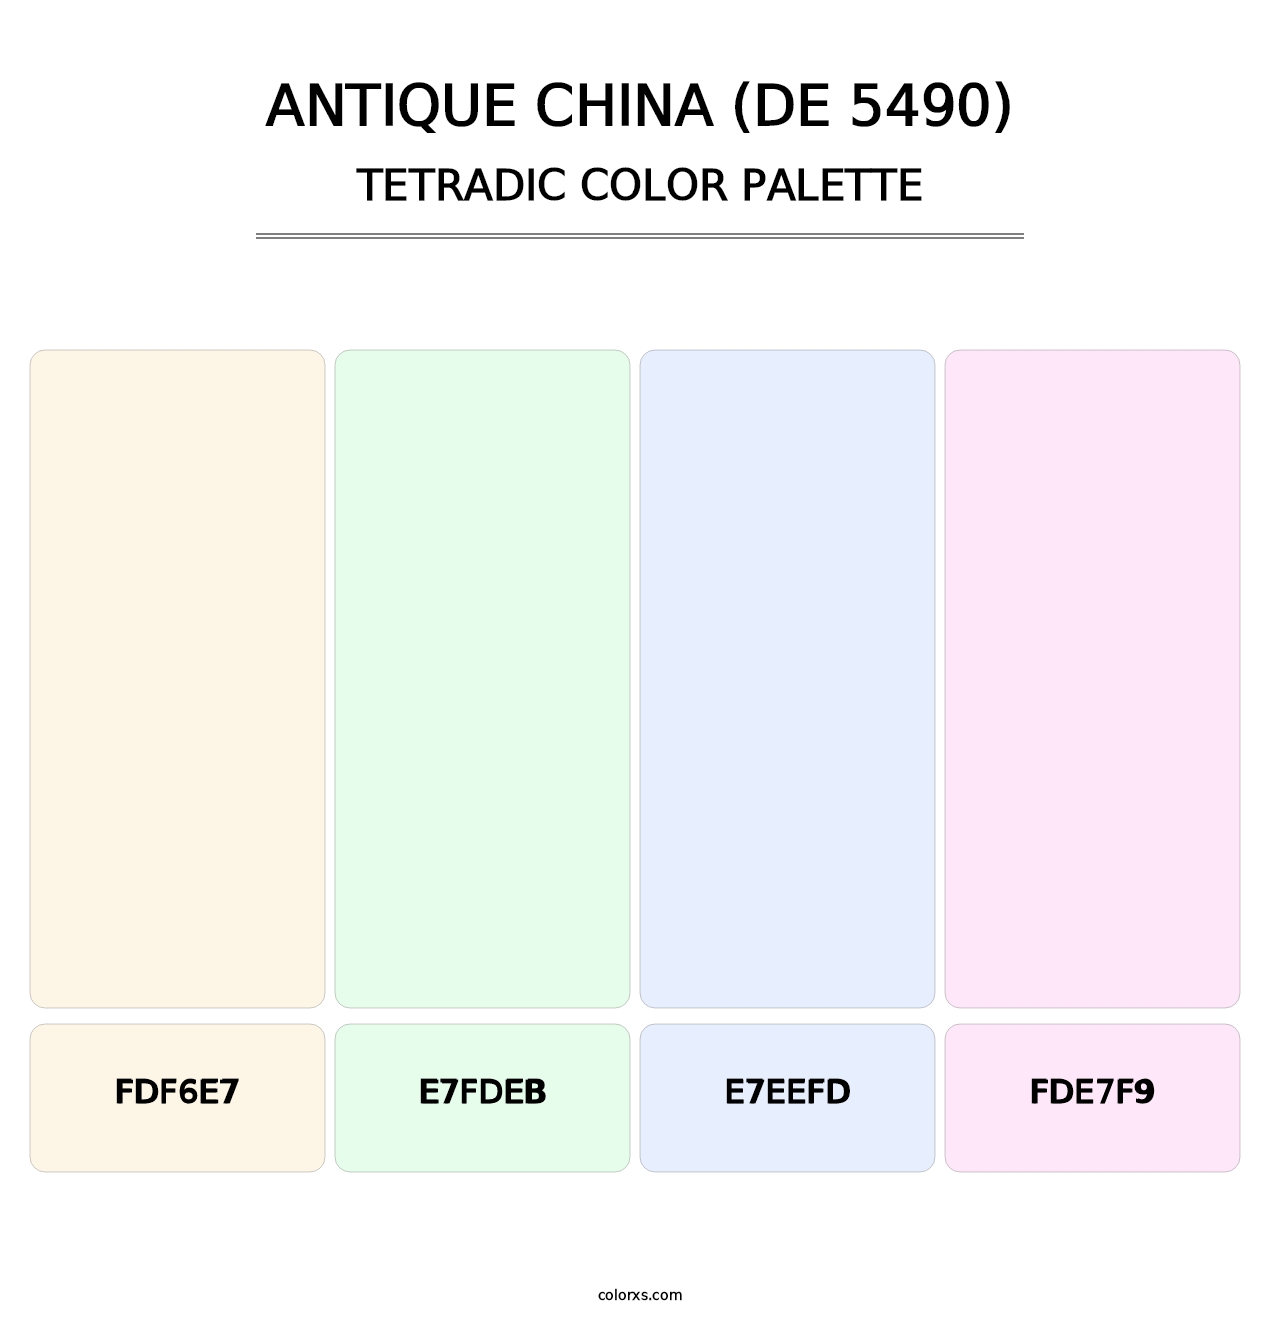 Antique China (DE 5490) - Tetradic Color Palette